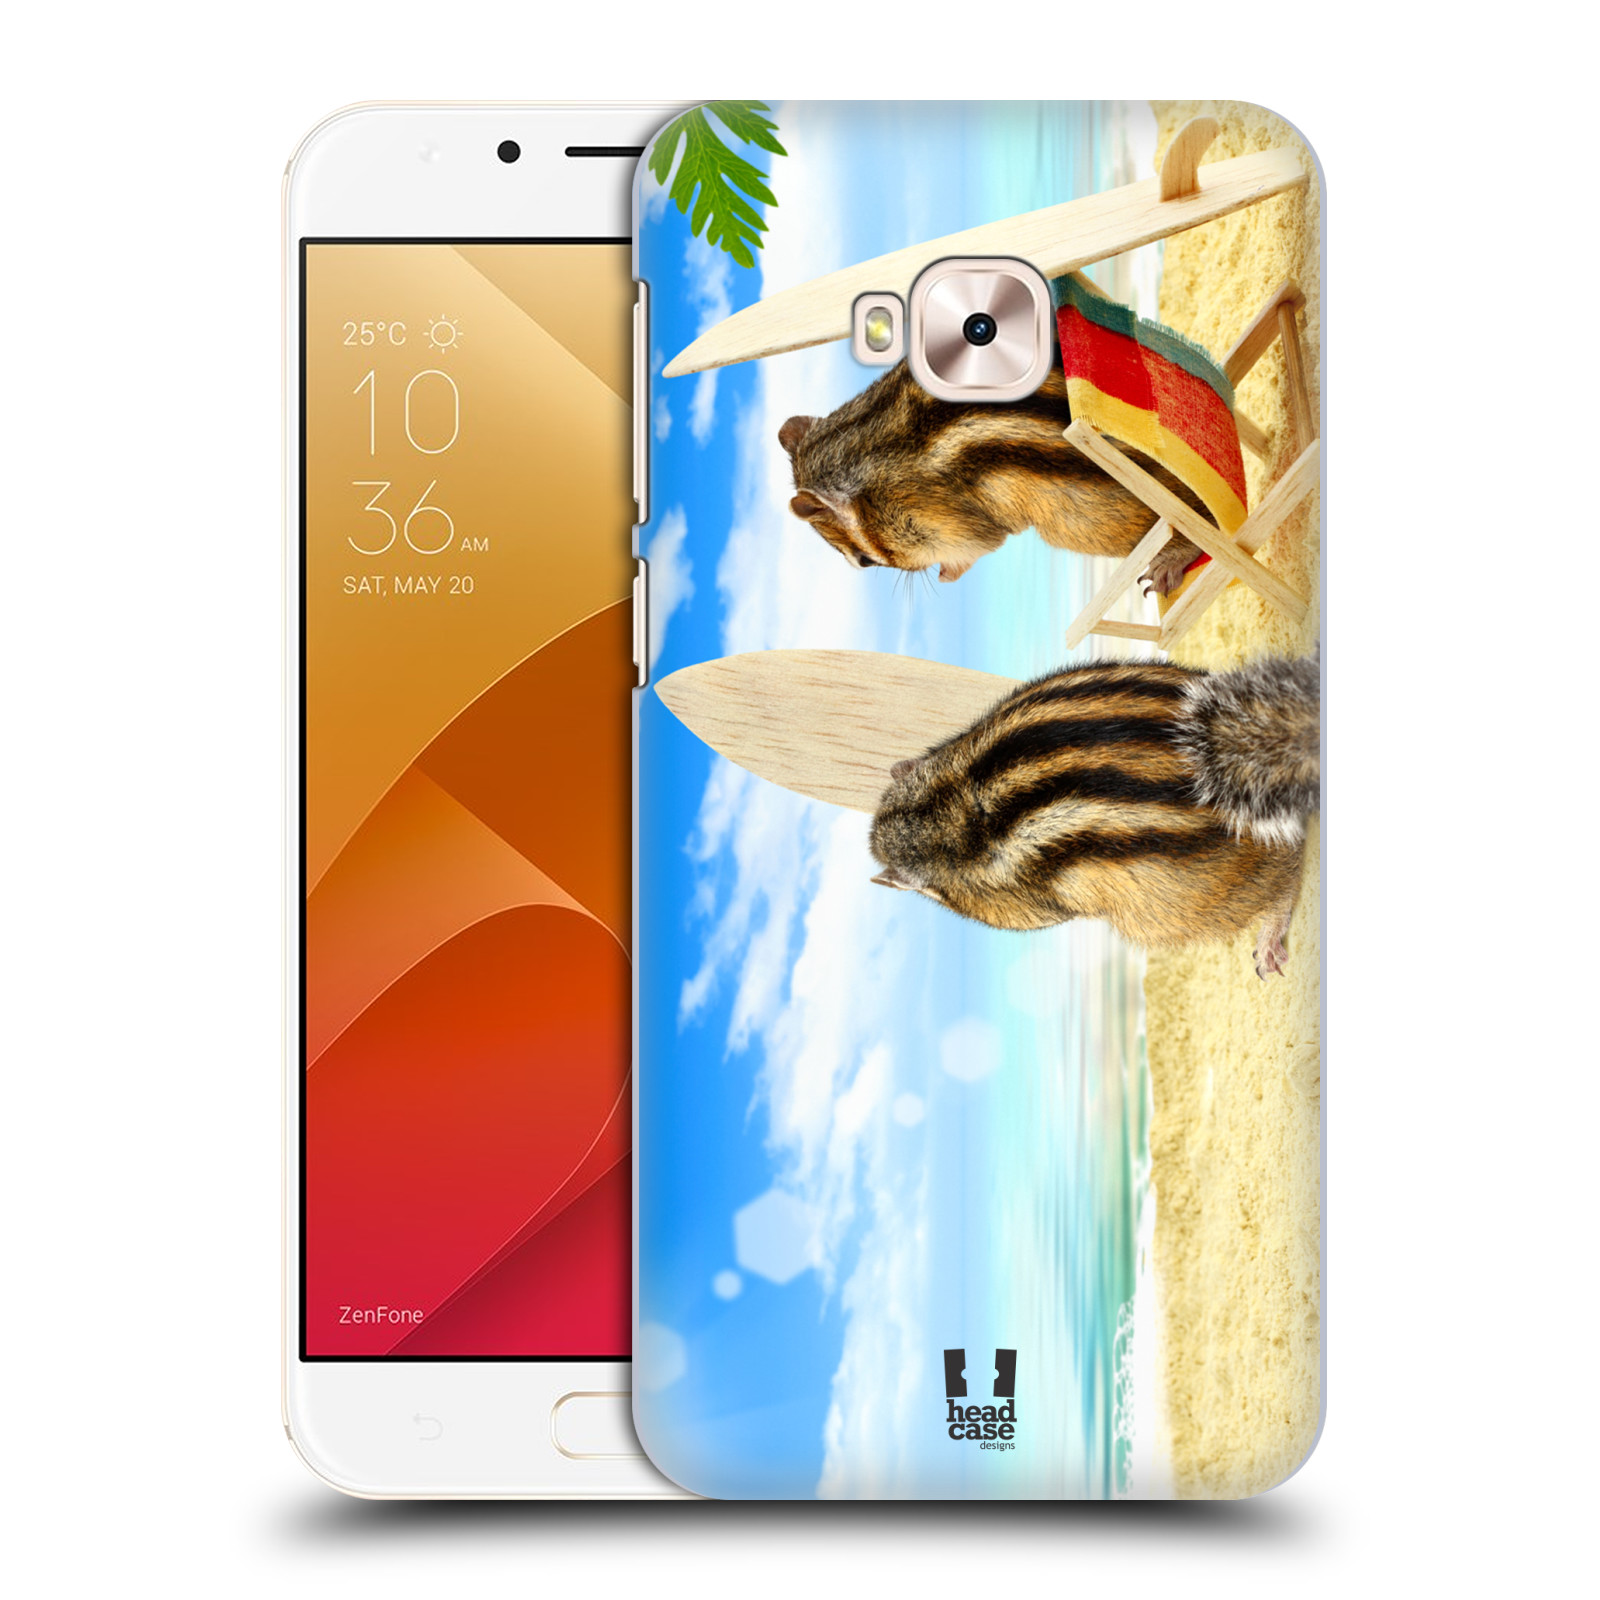 HEAD CASE plastový obal na mobil Asus Zenfone 4 Selfie Pro ZD552KL vzor Legrační zvířátka veverky surfaři u moře